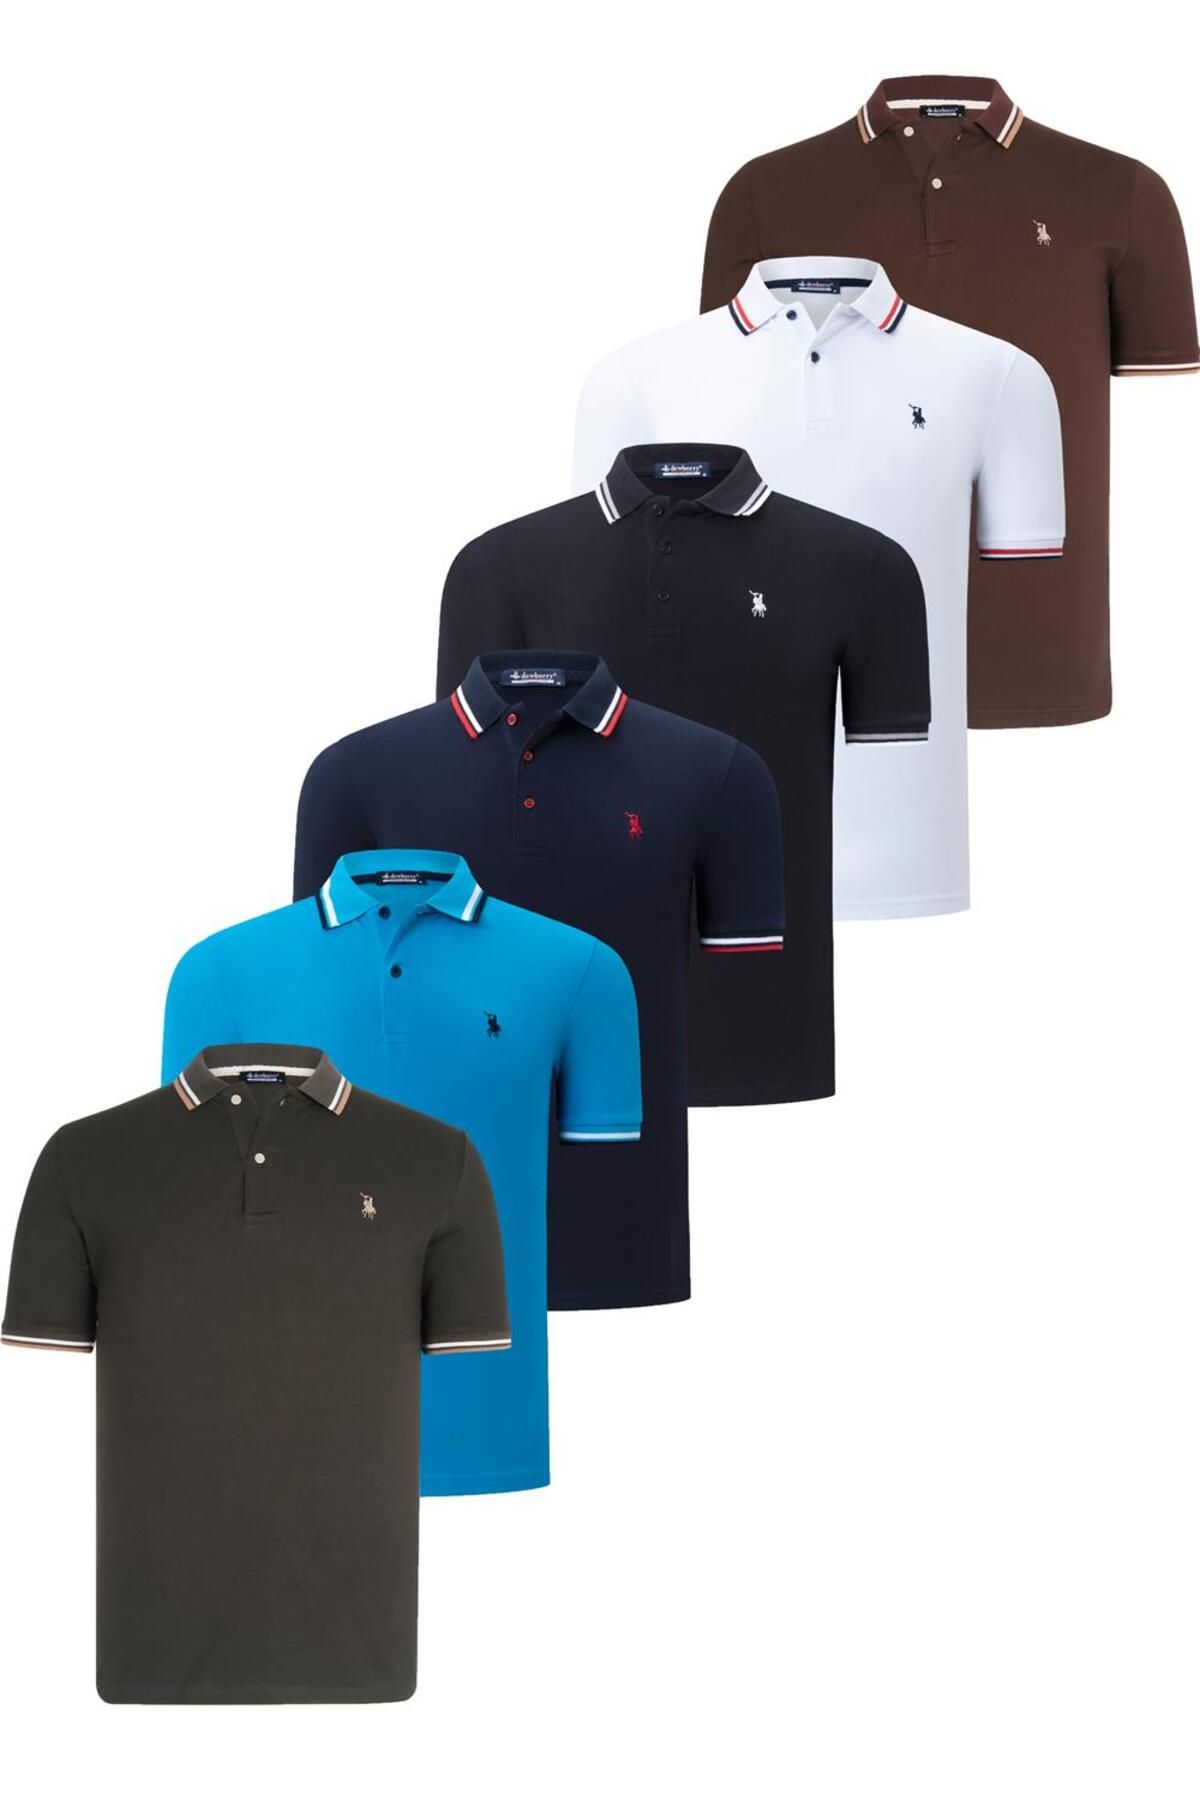 Dewberry ست شش عددی تی شرت مردانه T8594 DEWBERRY-مشکی-سفید-آبی تیره-خاکی-آبی-قهوه ای